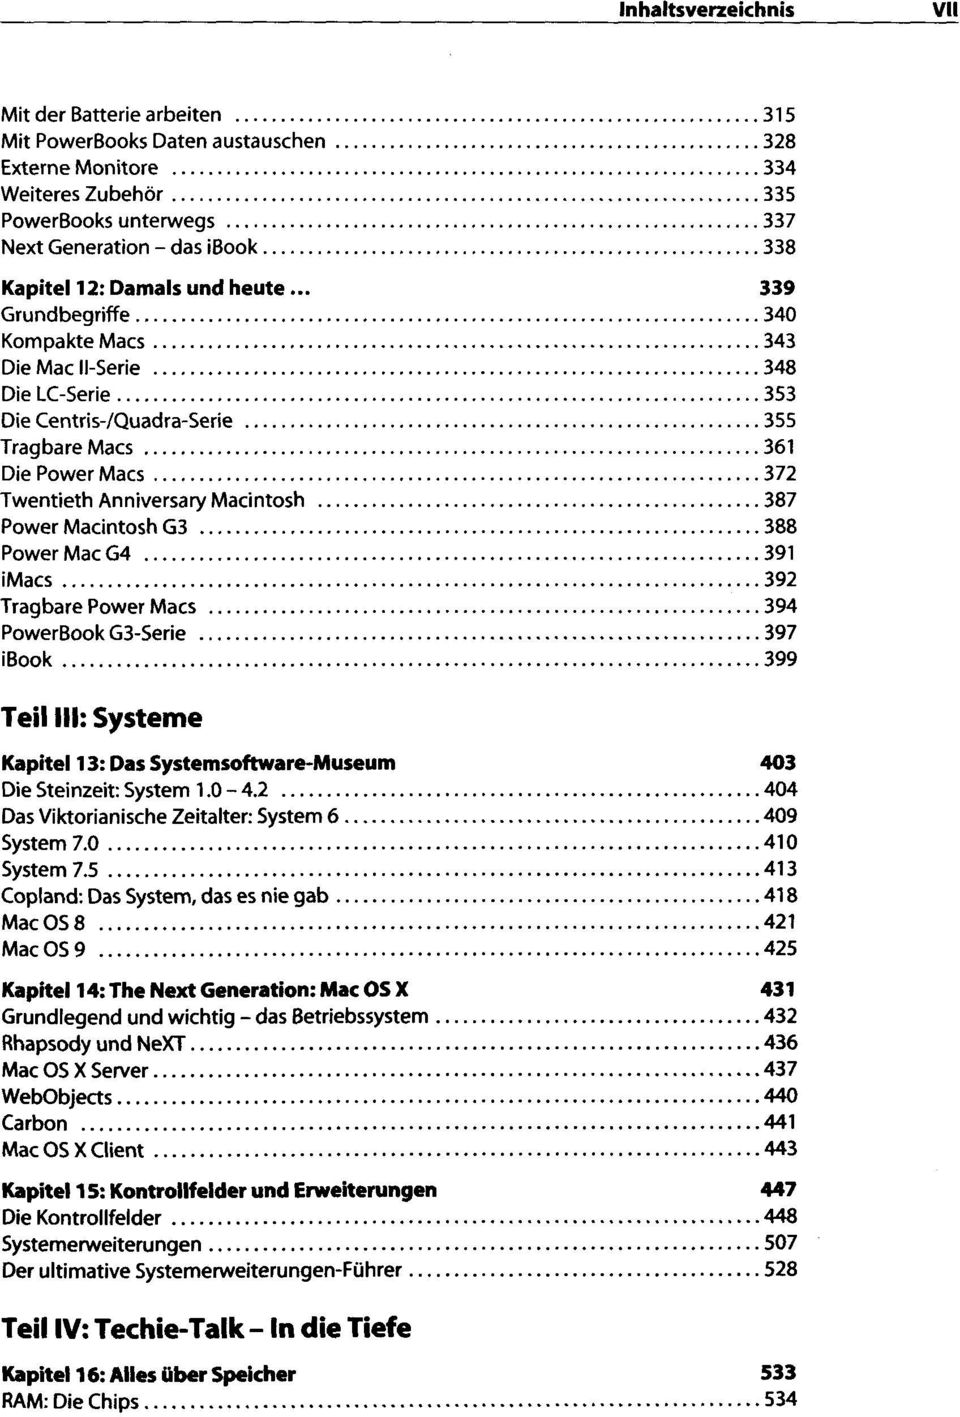 Macintosh G3 38 8 Power Mac G4 39 1 imacs 39 2 Tragbare Power Macs 394 PowerBook G3-Serie 39 7 ibook 39 9 Teil III: Systeme Kapitel 13 : Das Systemsoftware-Museum 403 Die Steinzeit: System 1.0-4.